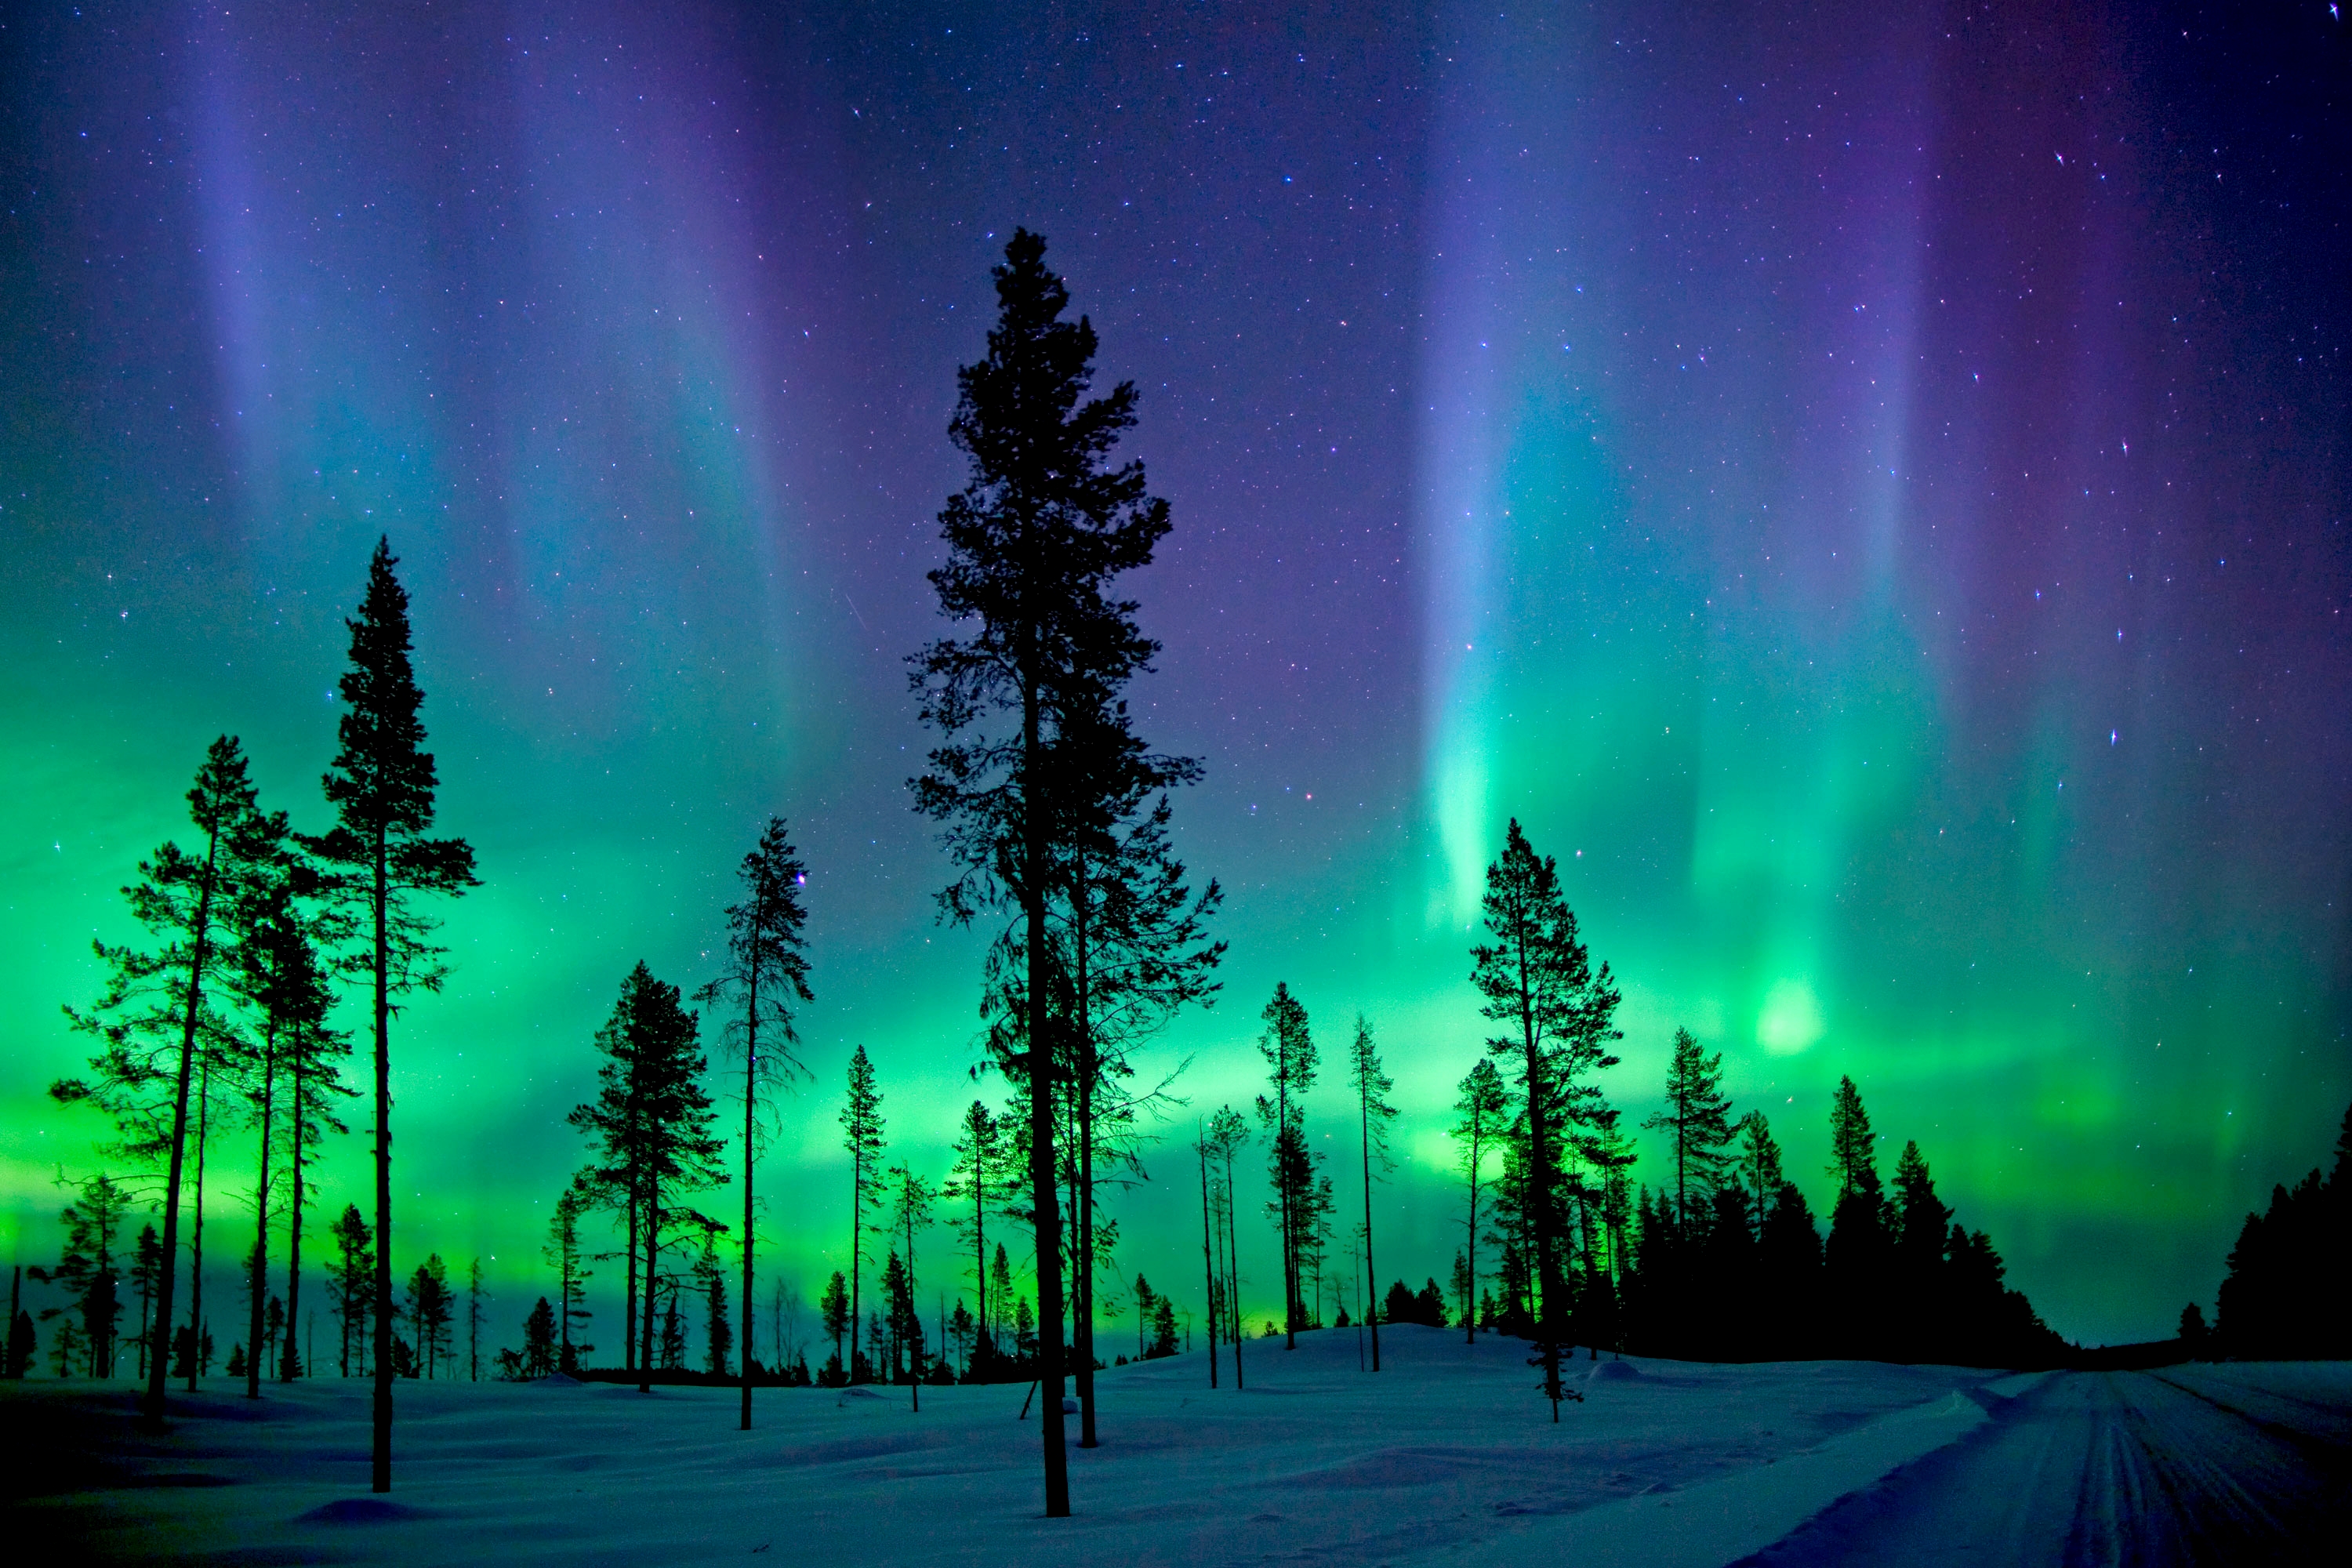 Bạn sẽ không muốn bỏ lỡ những hình nền vô cùng đẹp mắt với Aurora động lung linh trên màn hình của mình. Với hiệu ứng ánh sáng tuyệt đẹp của vũ trụ, bạn sẽ được trải nghiệm cảm giác lạnh lẽo và huyền bí của vùng đất băng giá.